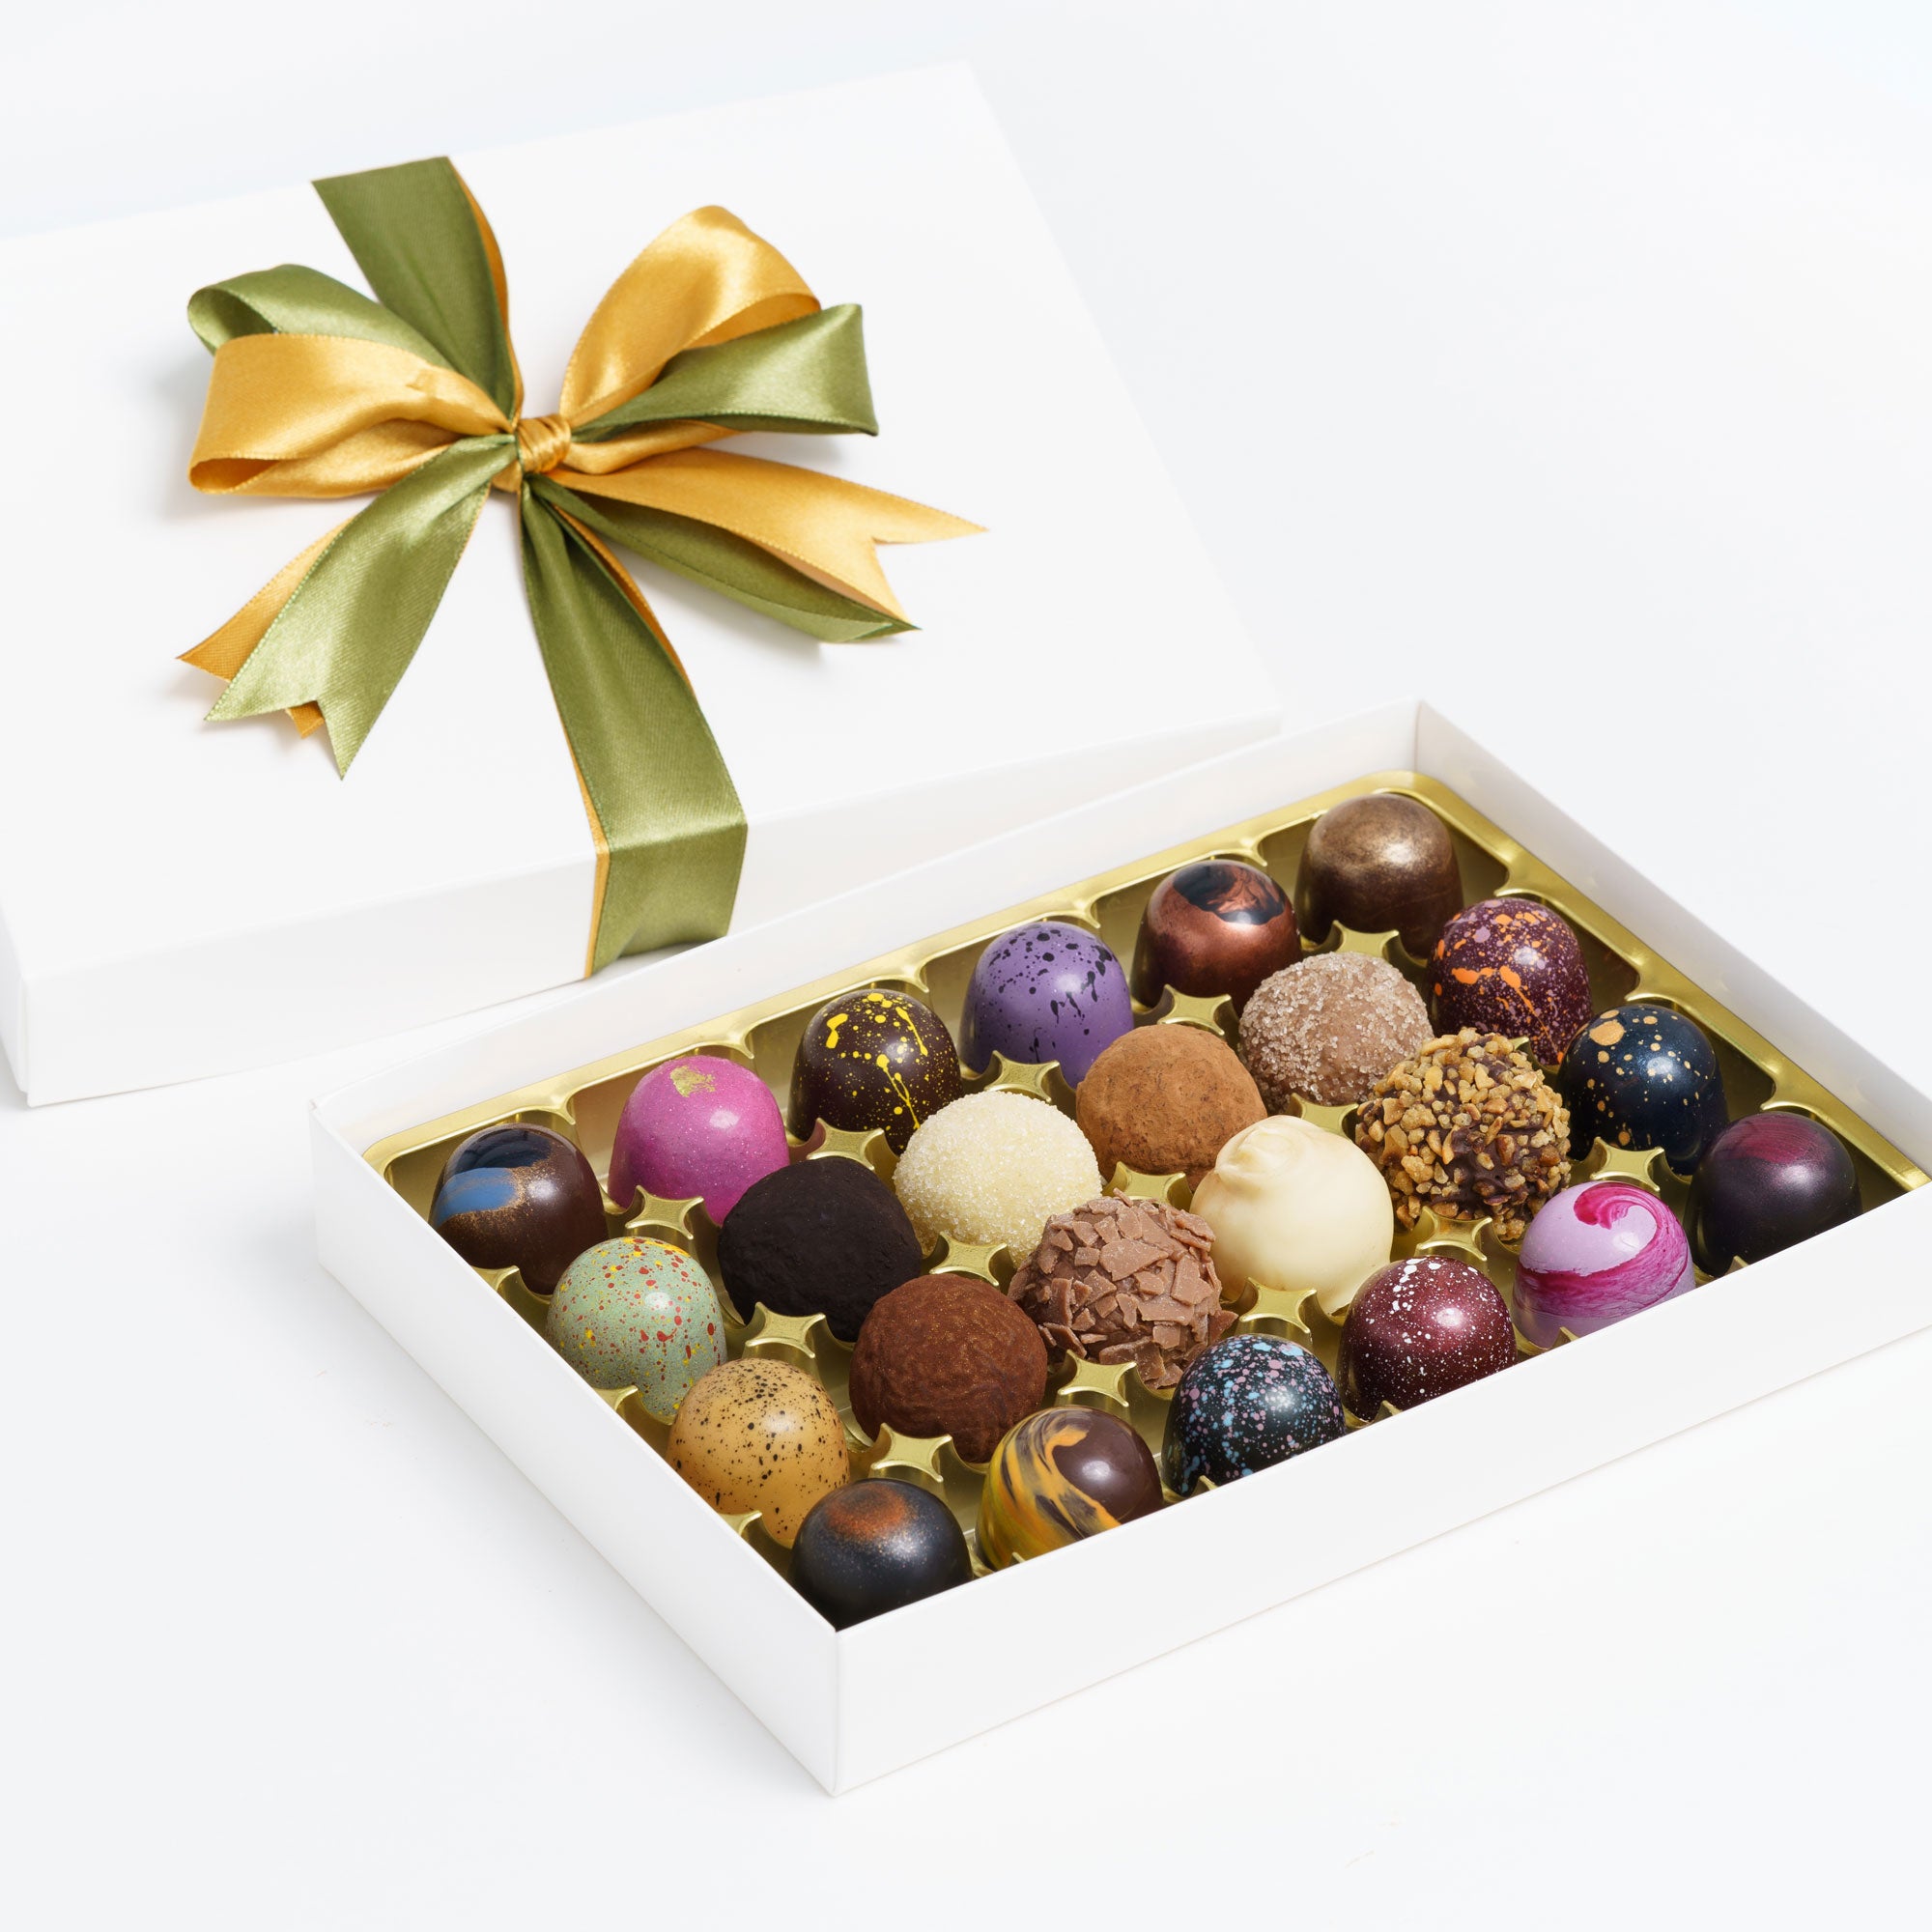 Artisan Chocolates - Box of 24